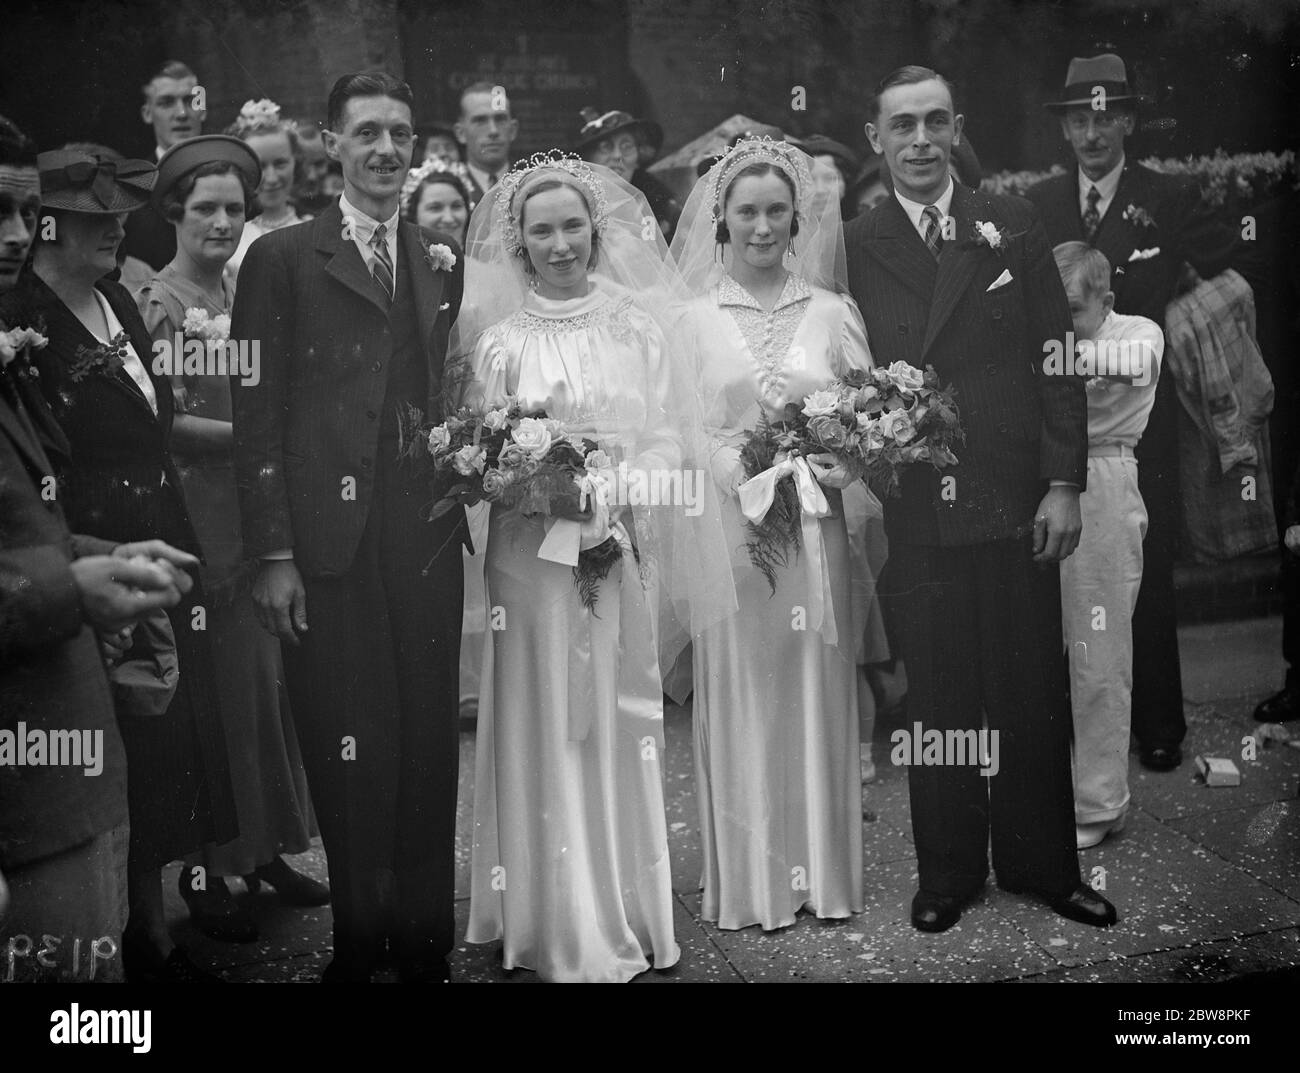 Il doppio matrimonio delle sorelle o' Brian . I matrimoni dei signori W T Johnson e della signora A o' Brian e R H Clark e della signora e o' Brian. Luglio 1938 Foto Stock